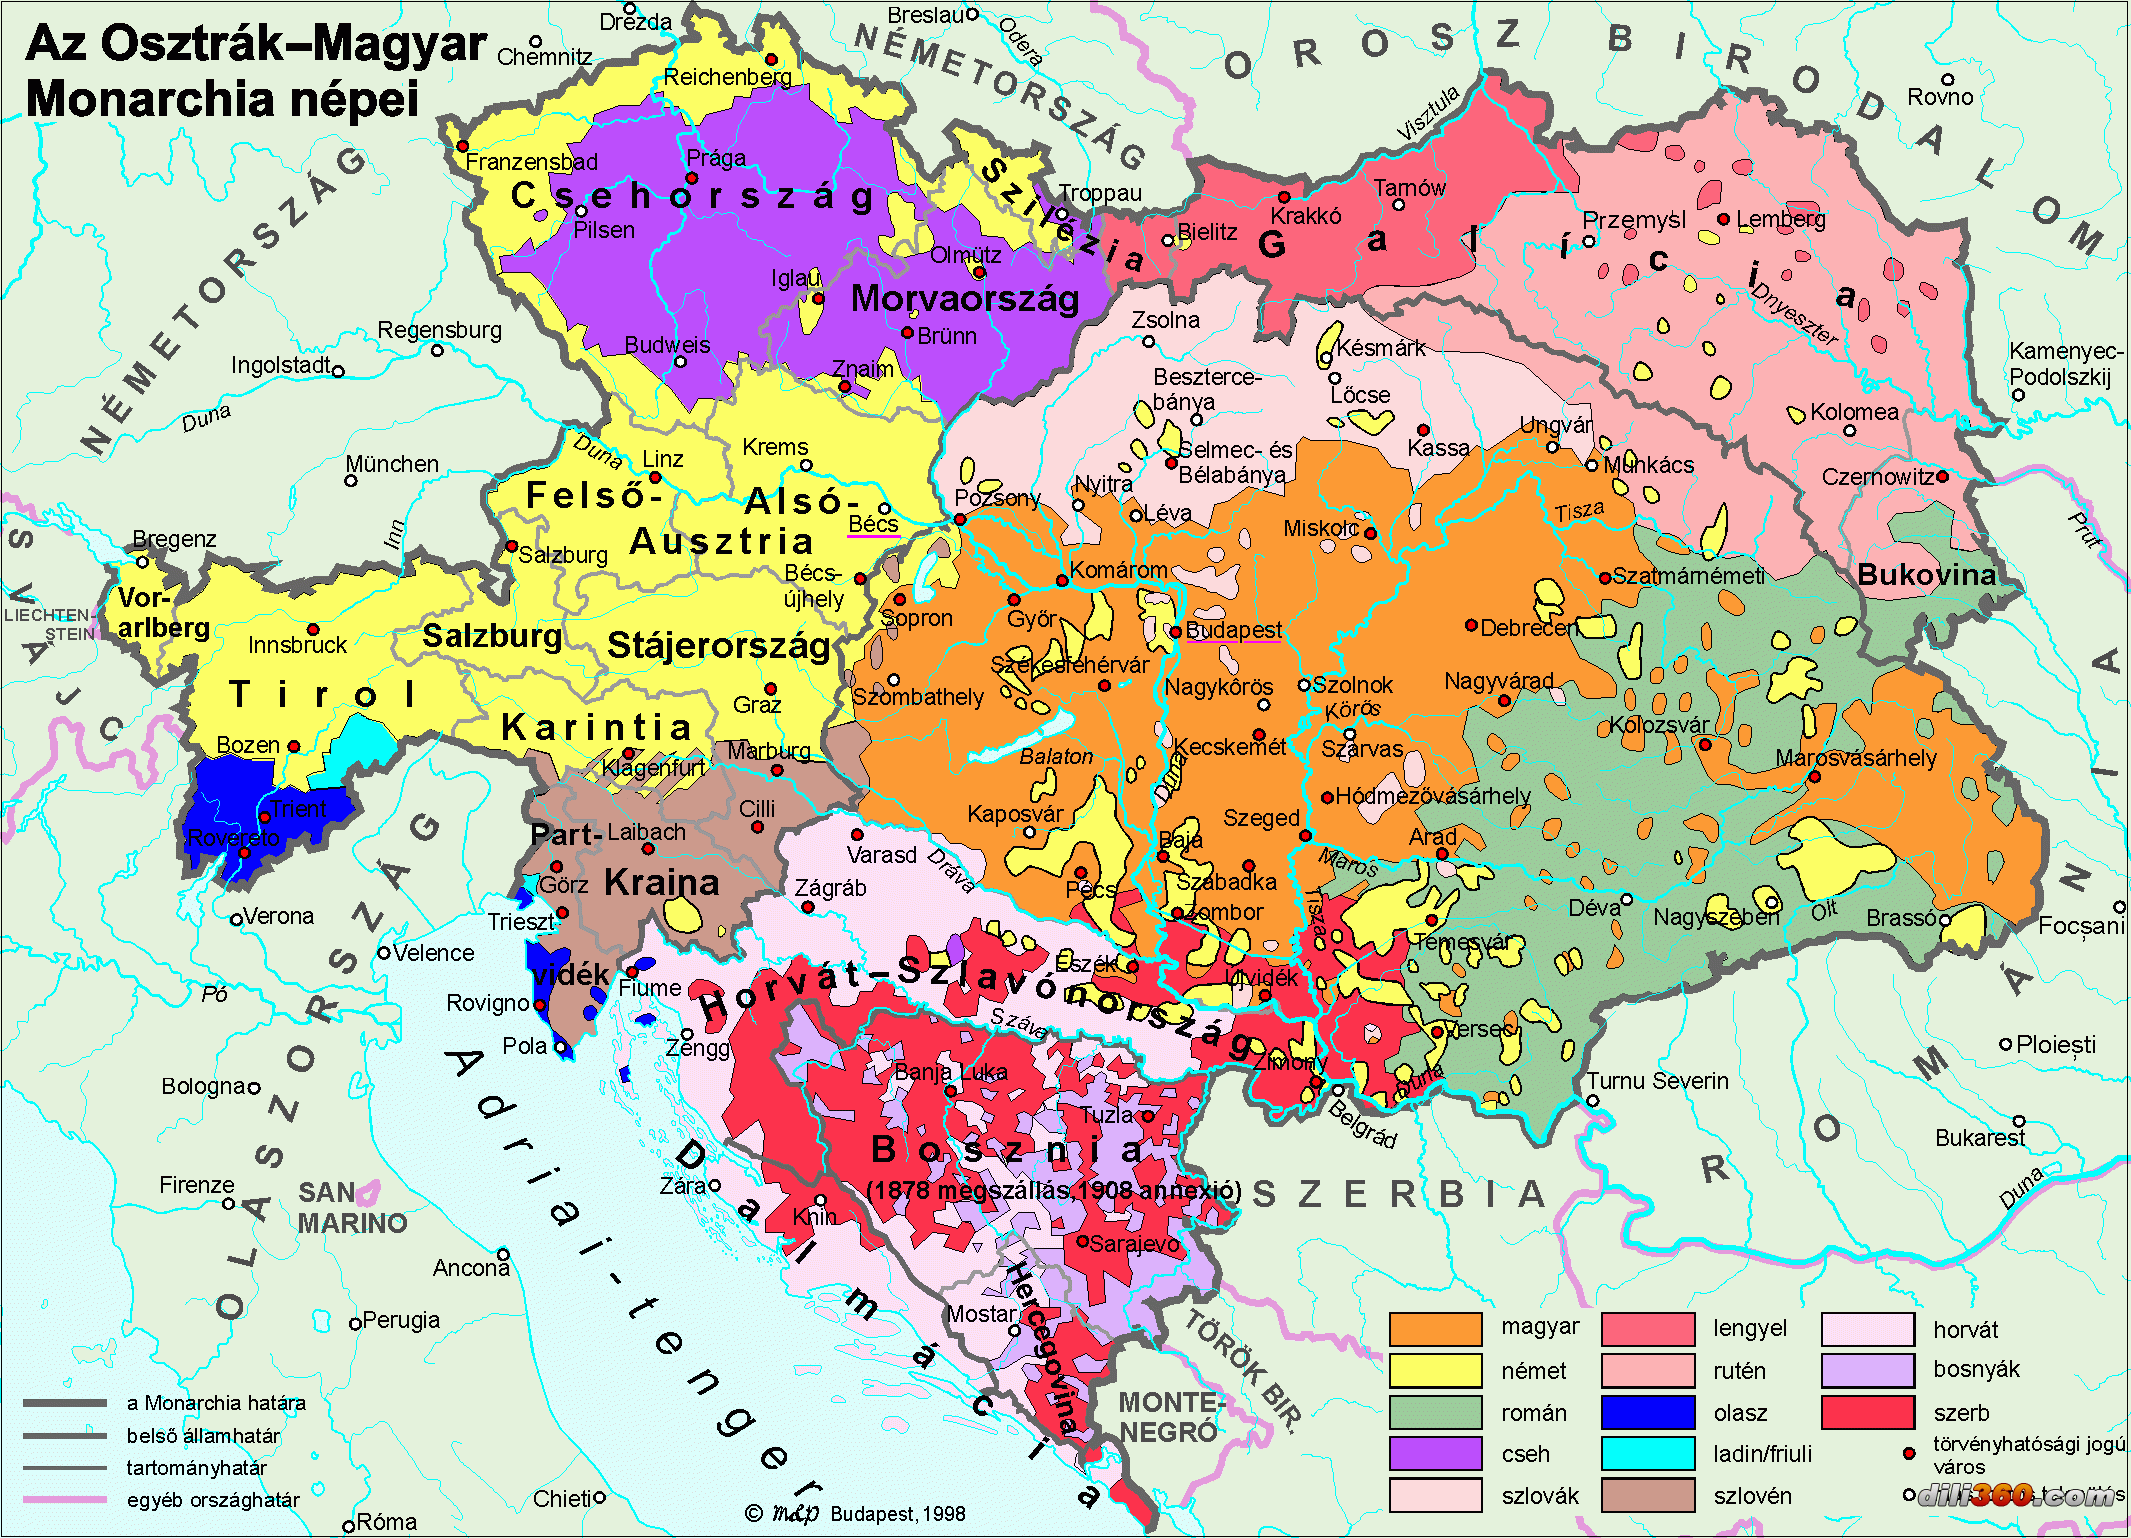 奥匈帝国地图全盛图片